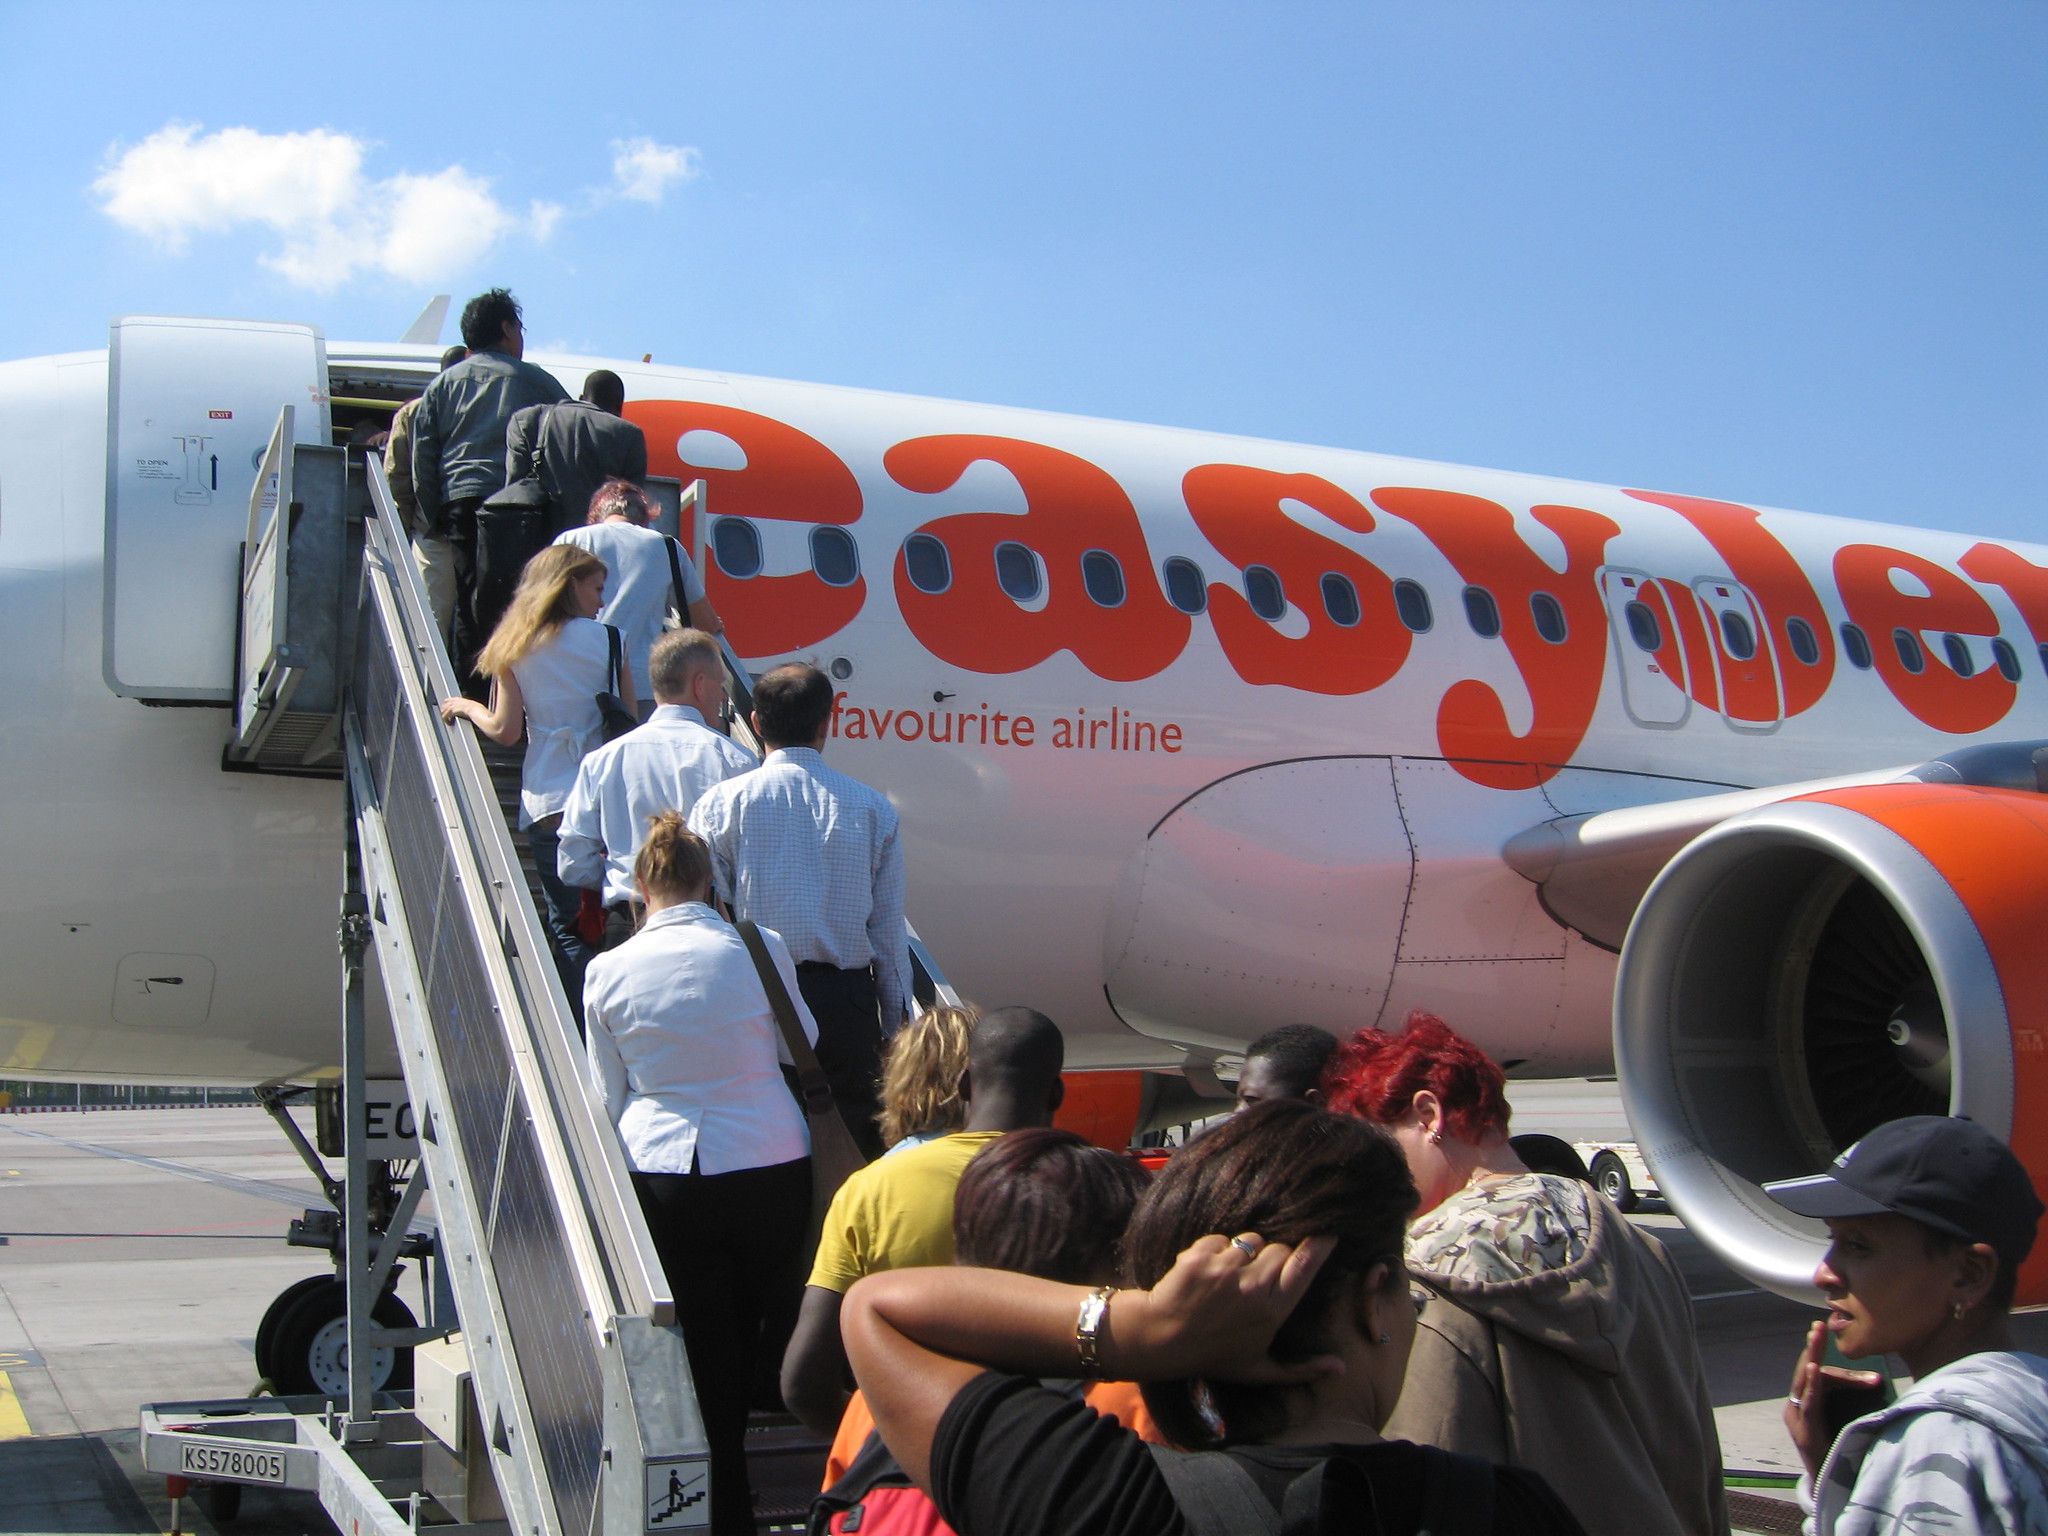 Passengers Boarding an easyJet aircraft.